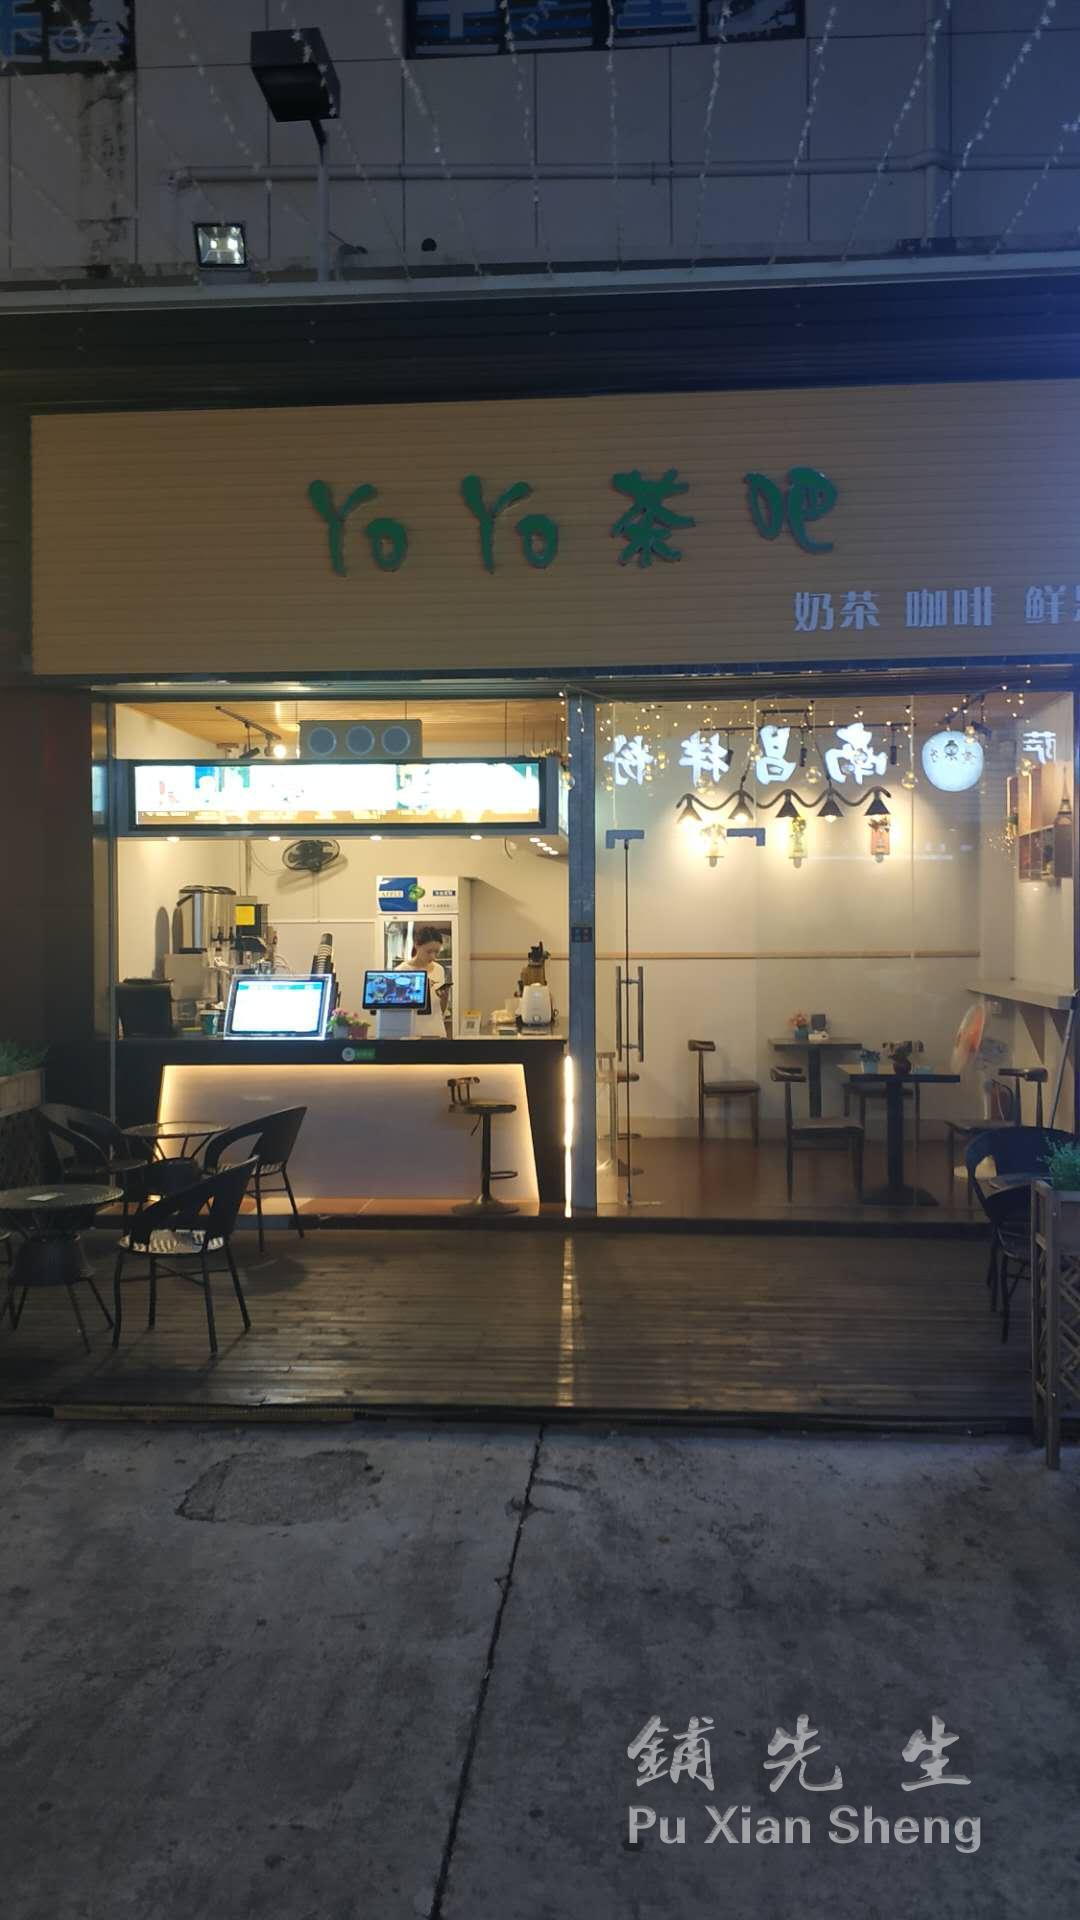 铺先生广东生活:东莞长安沙头社区和浩广场营业中奶茶店